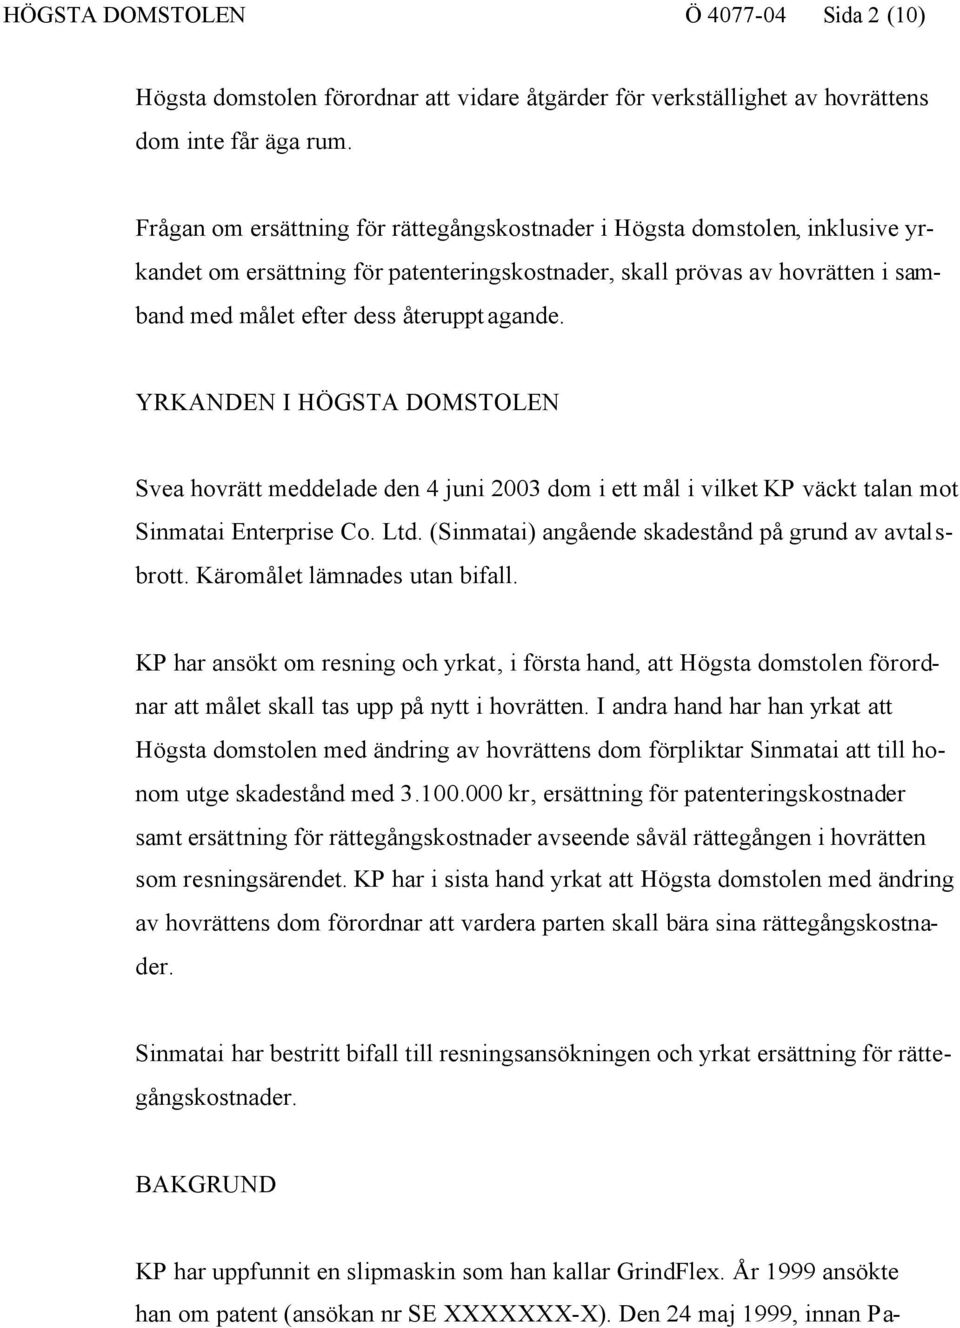 YRKANDEN I HÖGSTA DOMSTOLEN Svea hovrätt meddelade den 4 juni 2003 dom i ett mål i vilket KP väckt talan mot Sinmatai Enterprise Co. Ltd. (Sinmatai) angående skadestånd på grund av avtalsbrott.